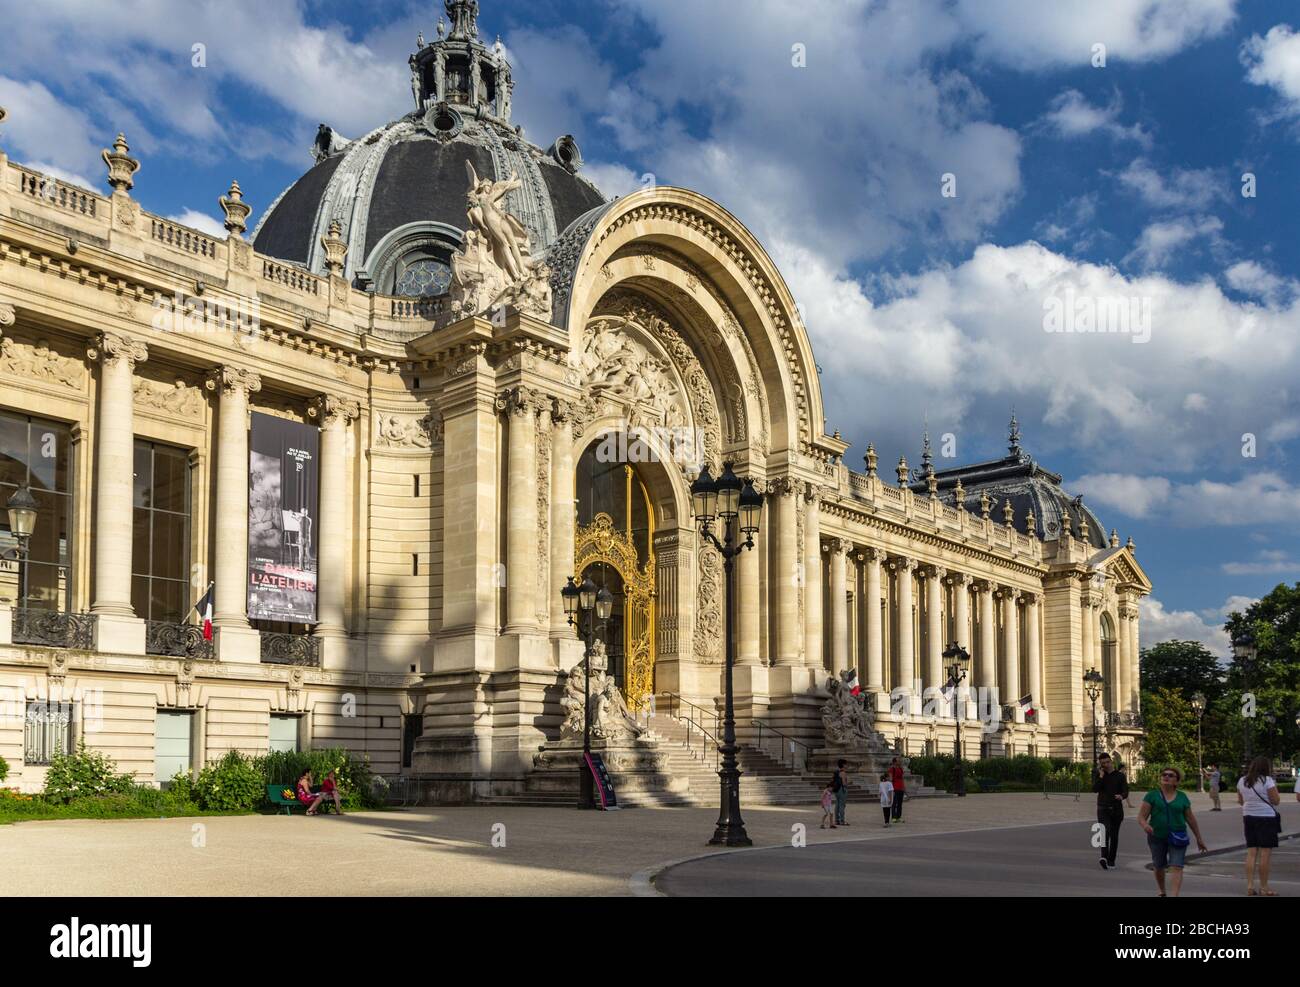 Paris, France - June 24, 2016: Le Petit Palais - Small palace is an art museum in the 8th arrondissement of Paris, France. Stock Photo